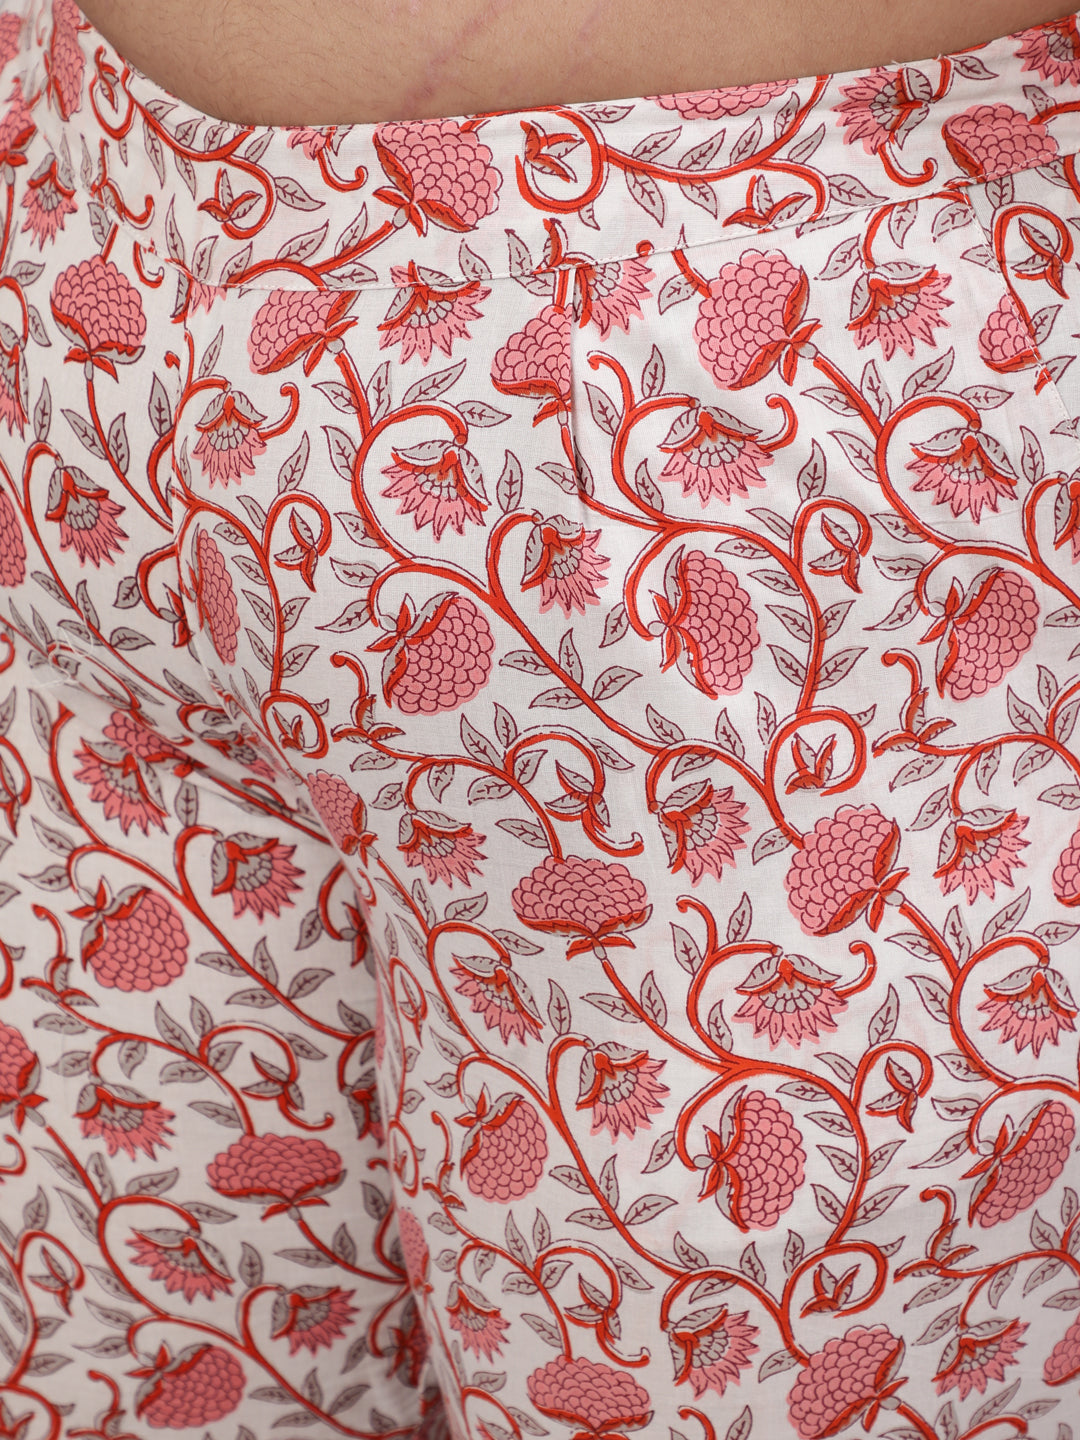 White & Pink Cotton Bagh Print Kurta & Pants